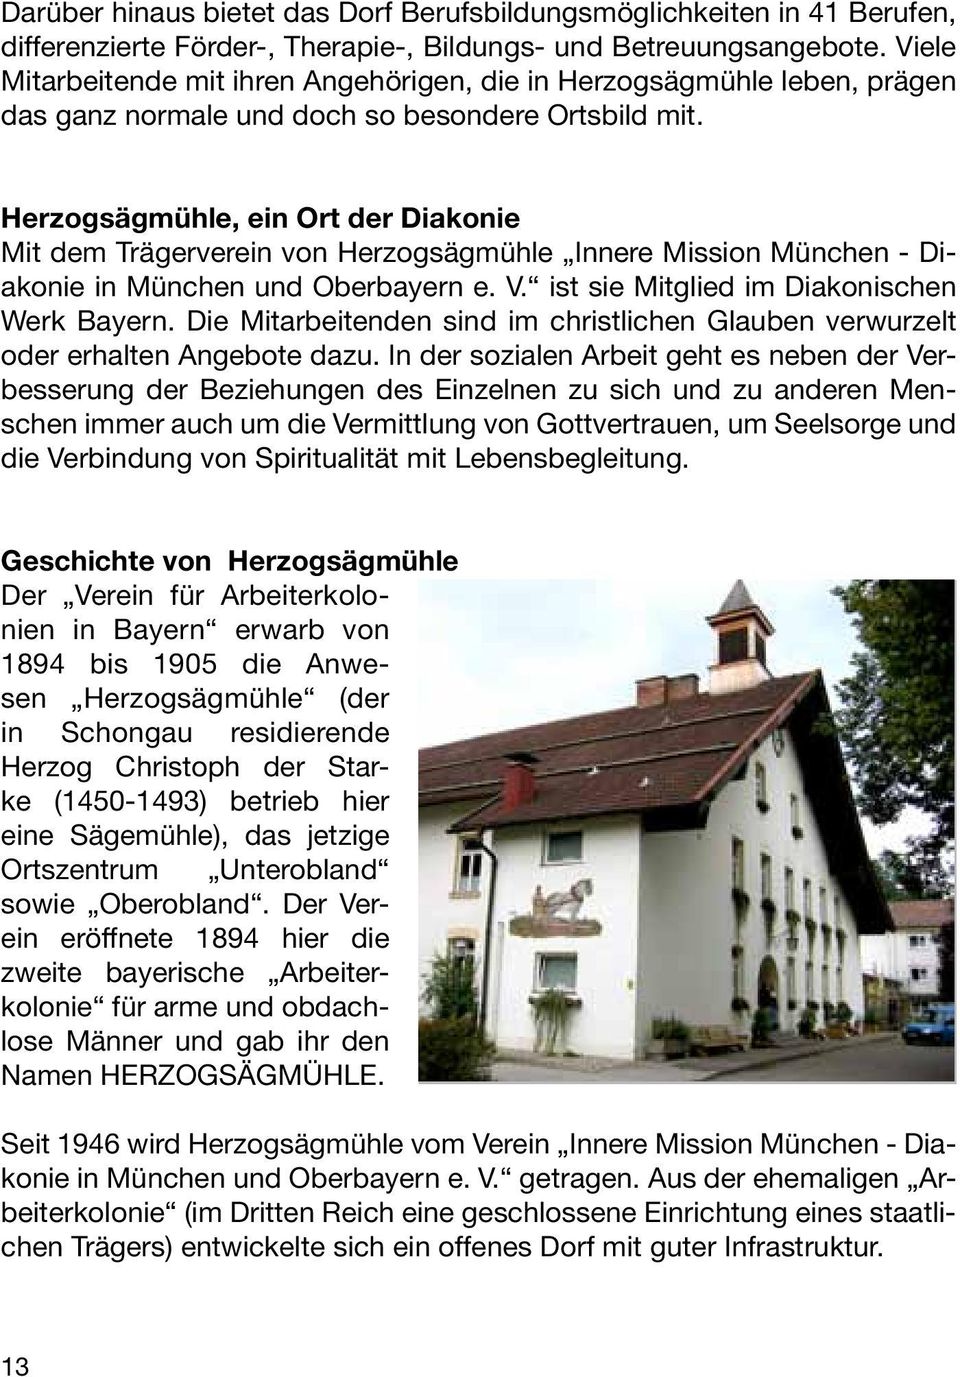 Herzogsägmühle, ein Ort der Diakonie Mit dem Trägerverein von Herzogsägmühle Innere Mission München - Diakonie in München und Oberbayern e. V. ist sie Mitglied im Diakonischen Werk Bayern.